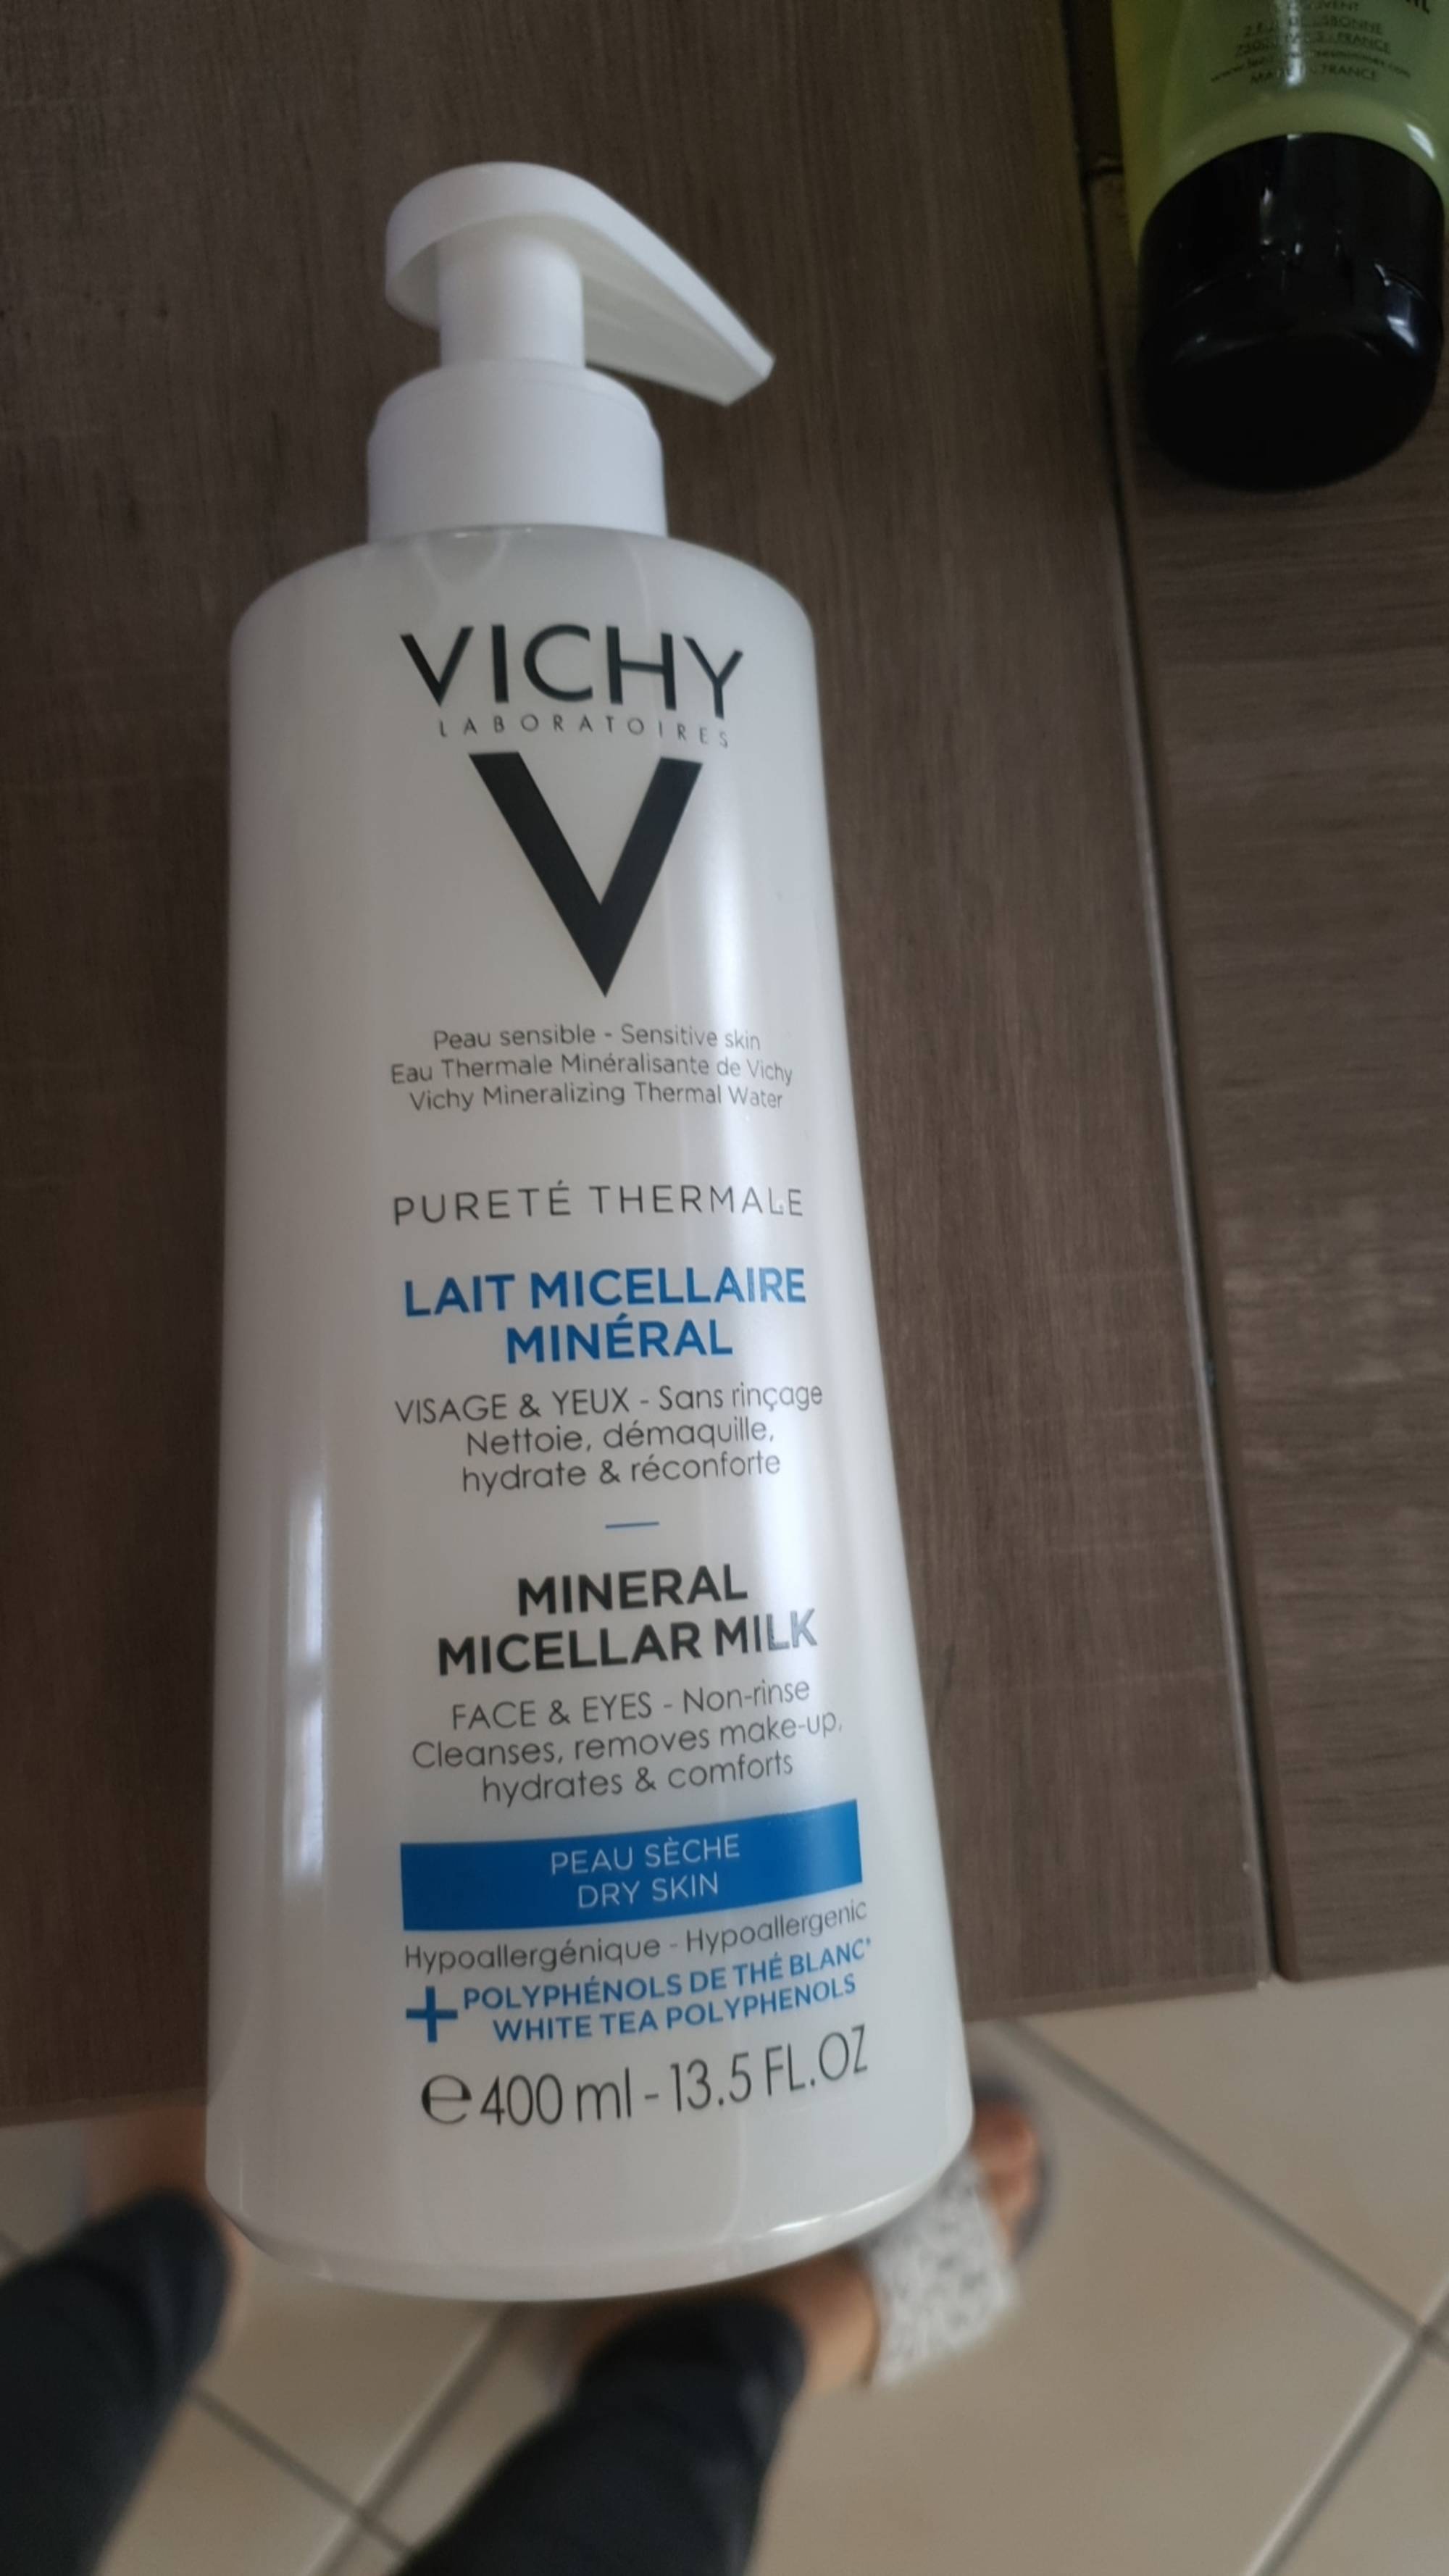 VICHY - Pureté thermale - Lait micellaire minéral 